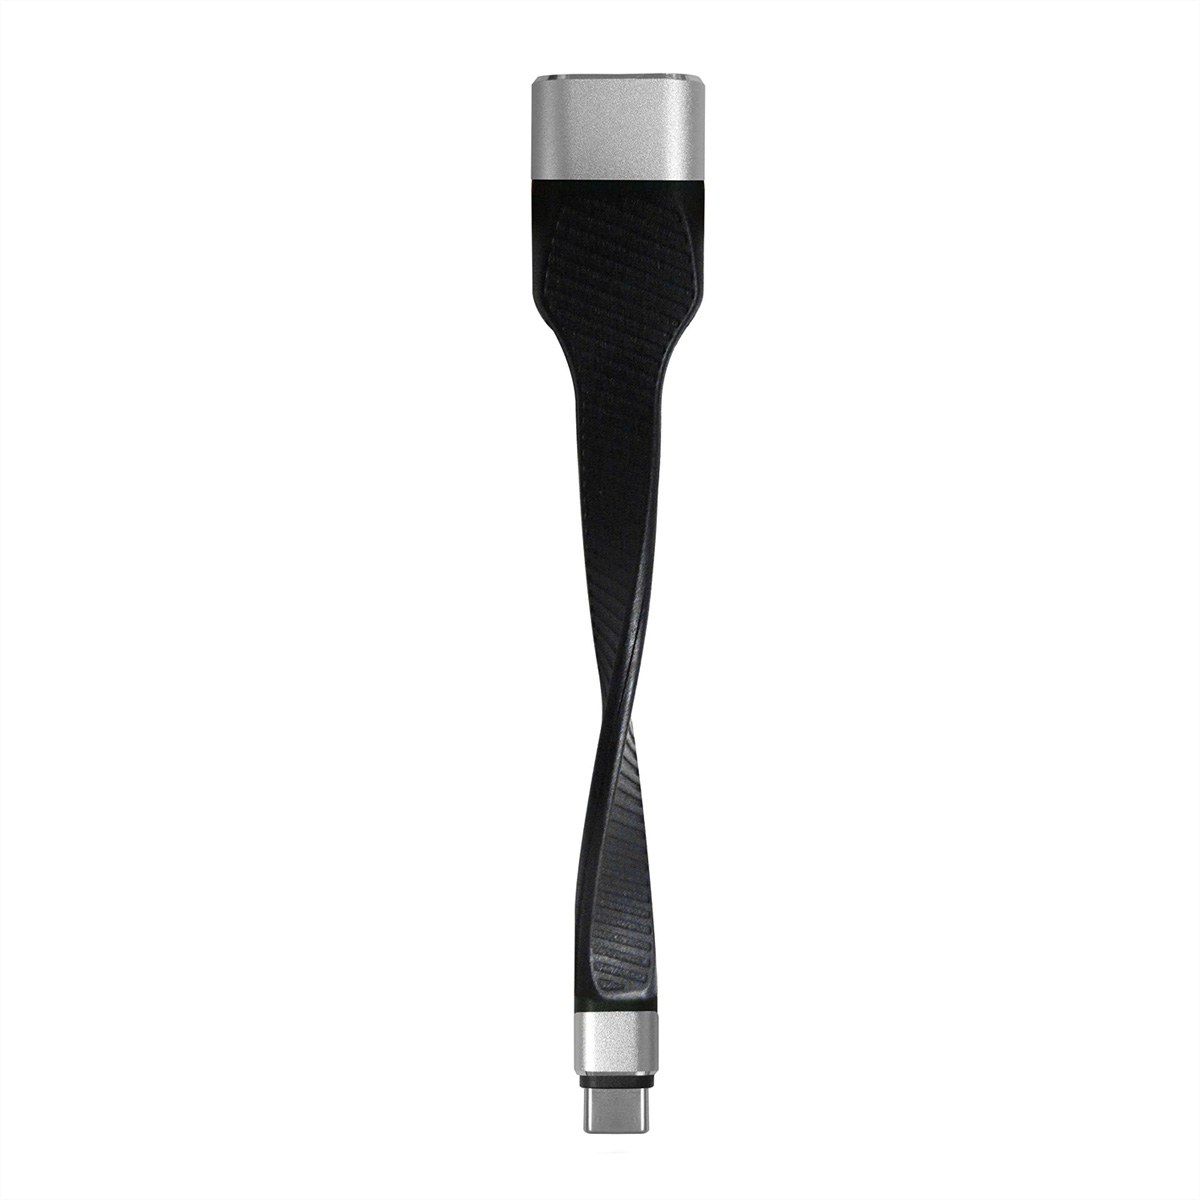 ROLINE Display Adapter ST/BU Typ - USB-HDMI Adapter HDMI, USB C